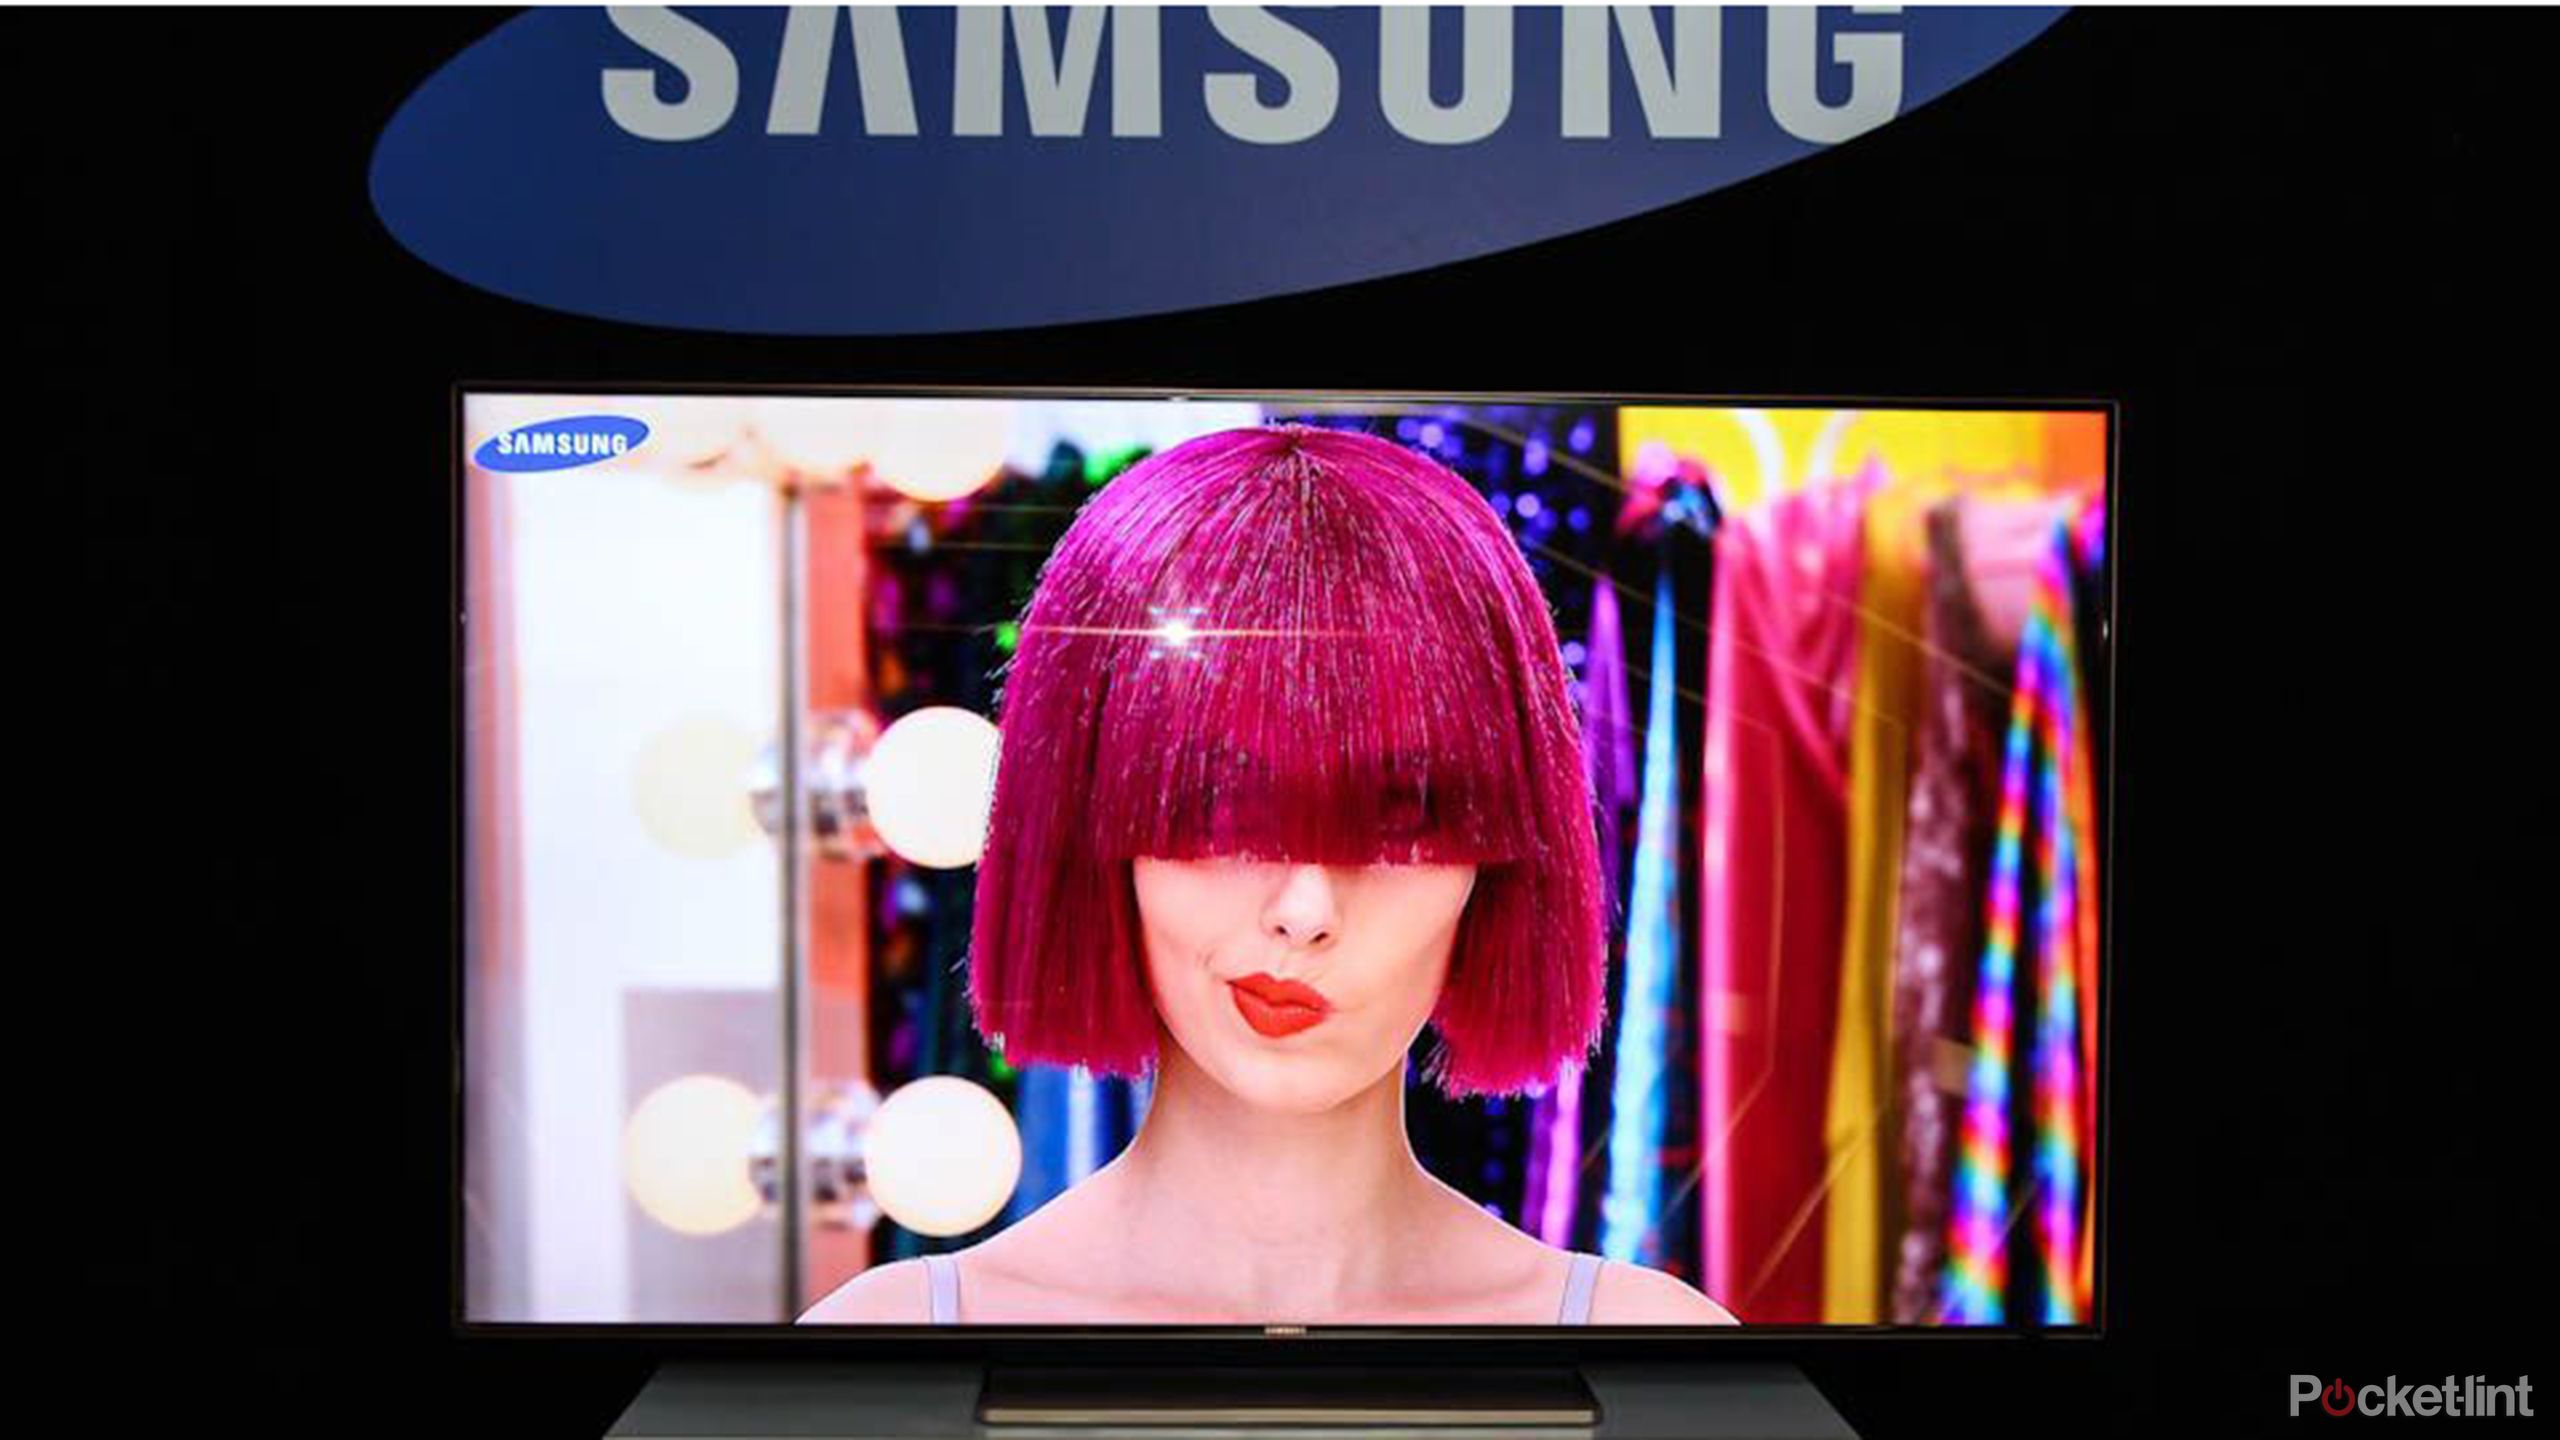 Vizio TV’ye Karşı Samsung TV’yi Almanız İçin 5 Neden